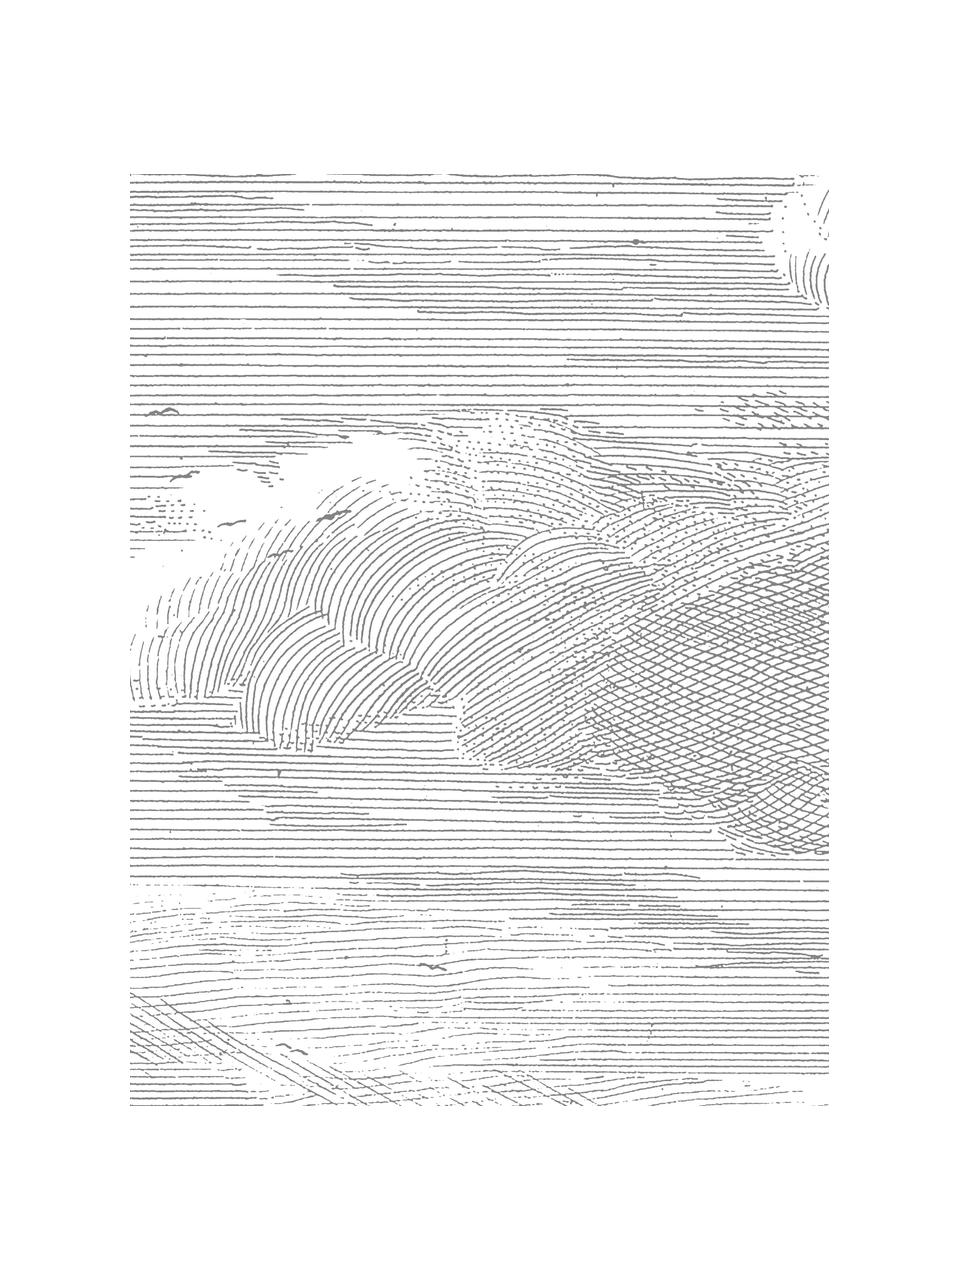 Papier peint photo Clouds, Intissé, Gris, blanc, larg. 195 x haut. 280 cm